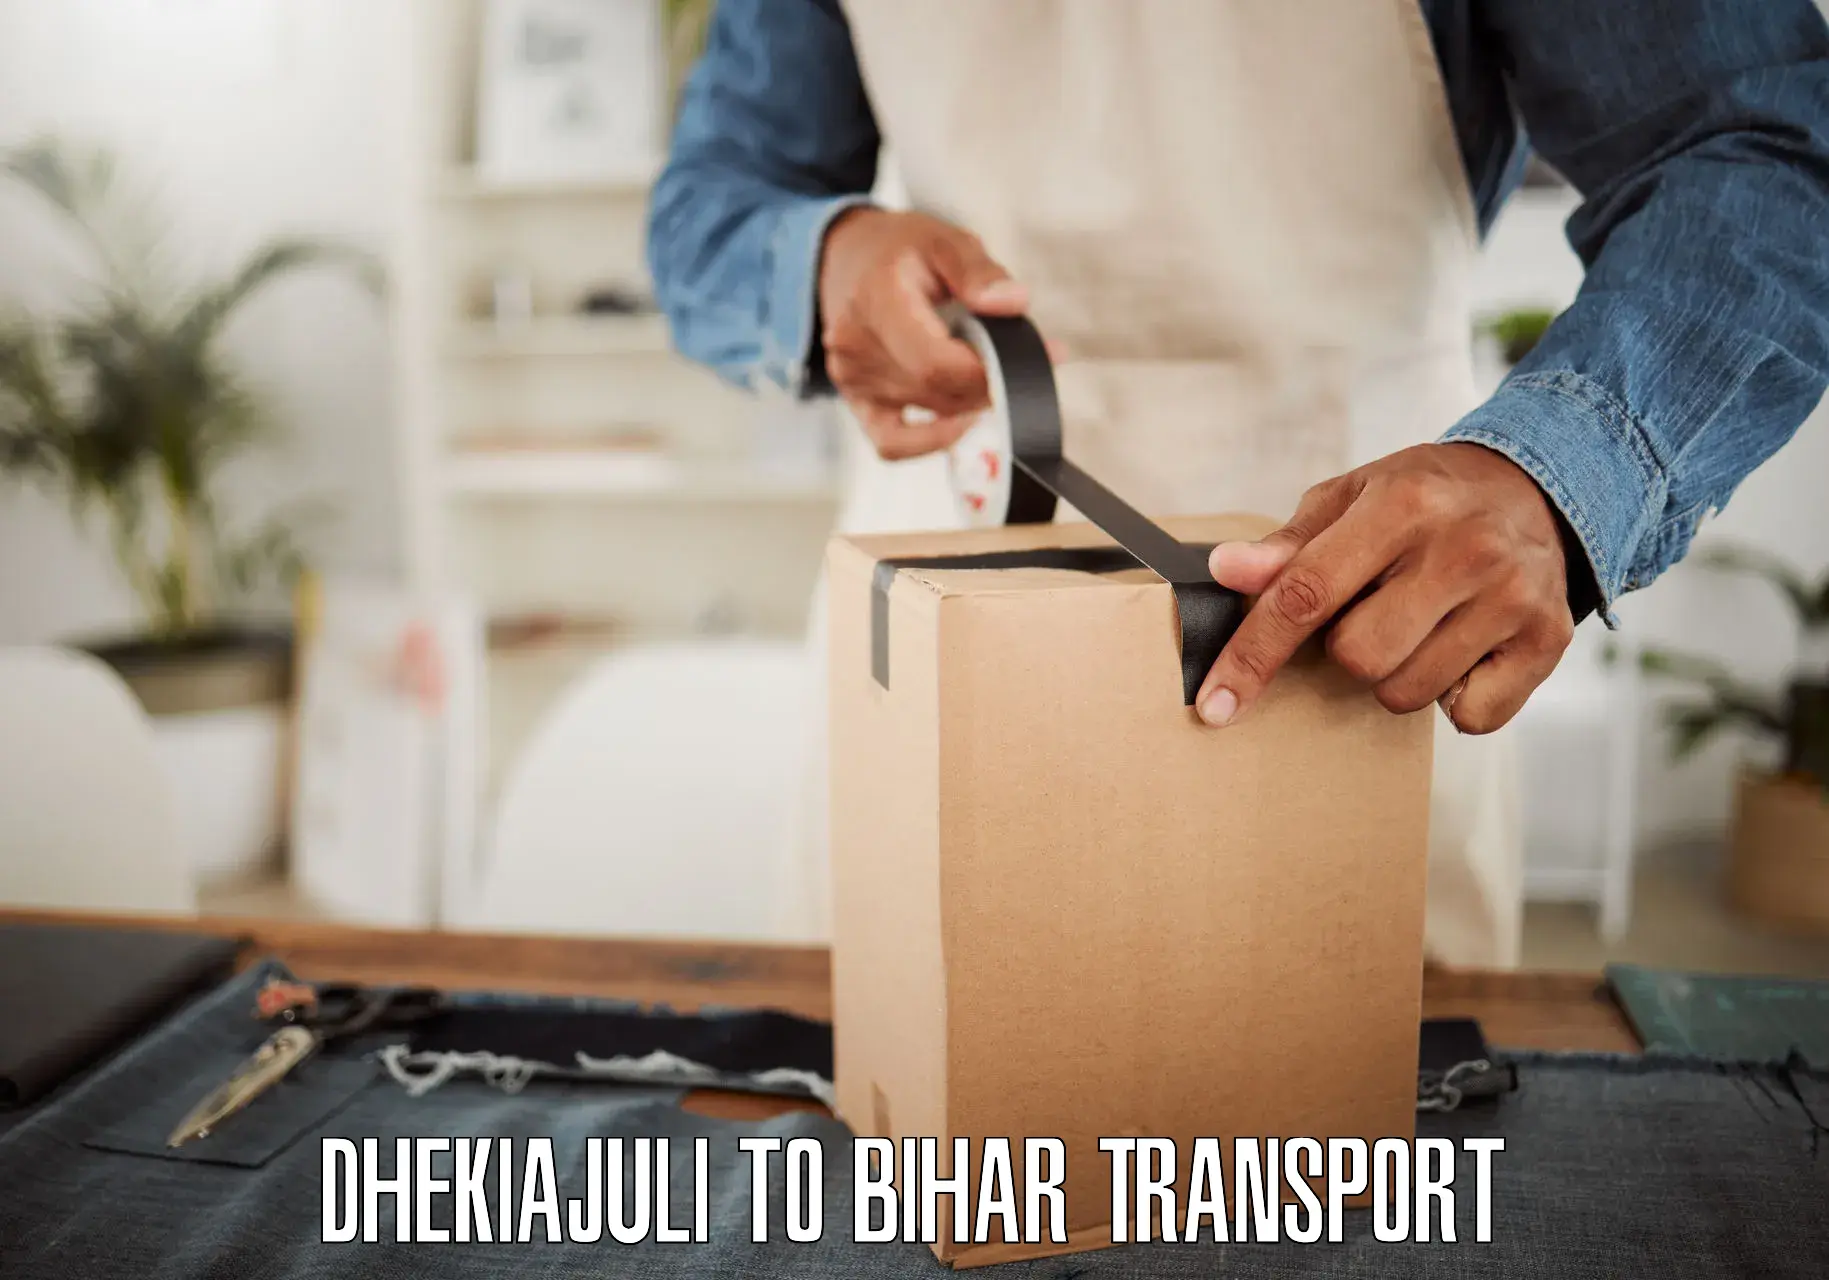 Parcel transport services Dhekiajuli to Kumarkhand